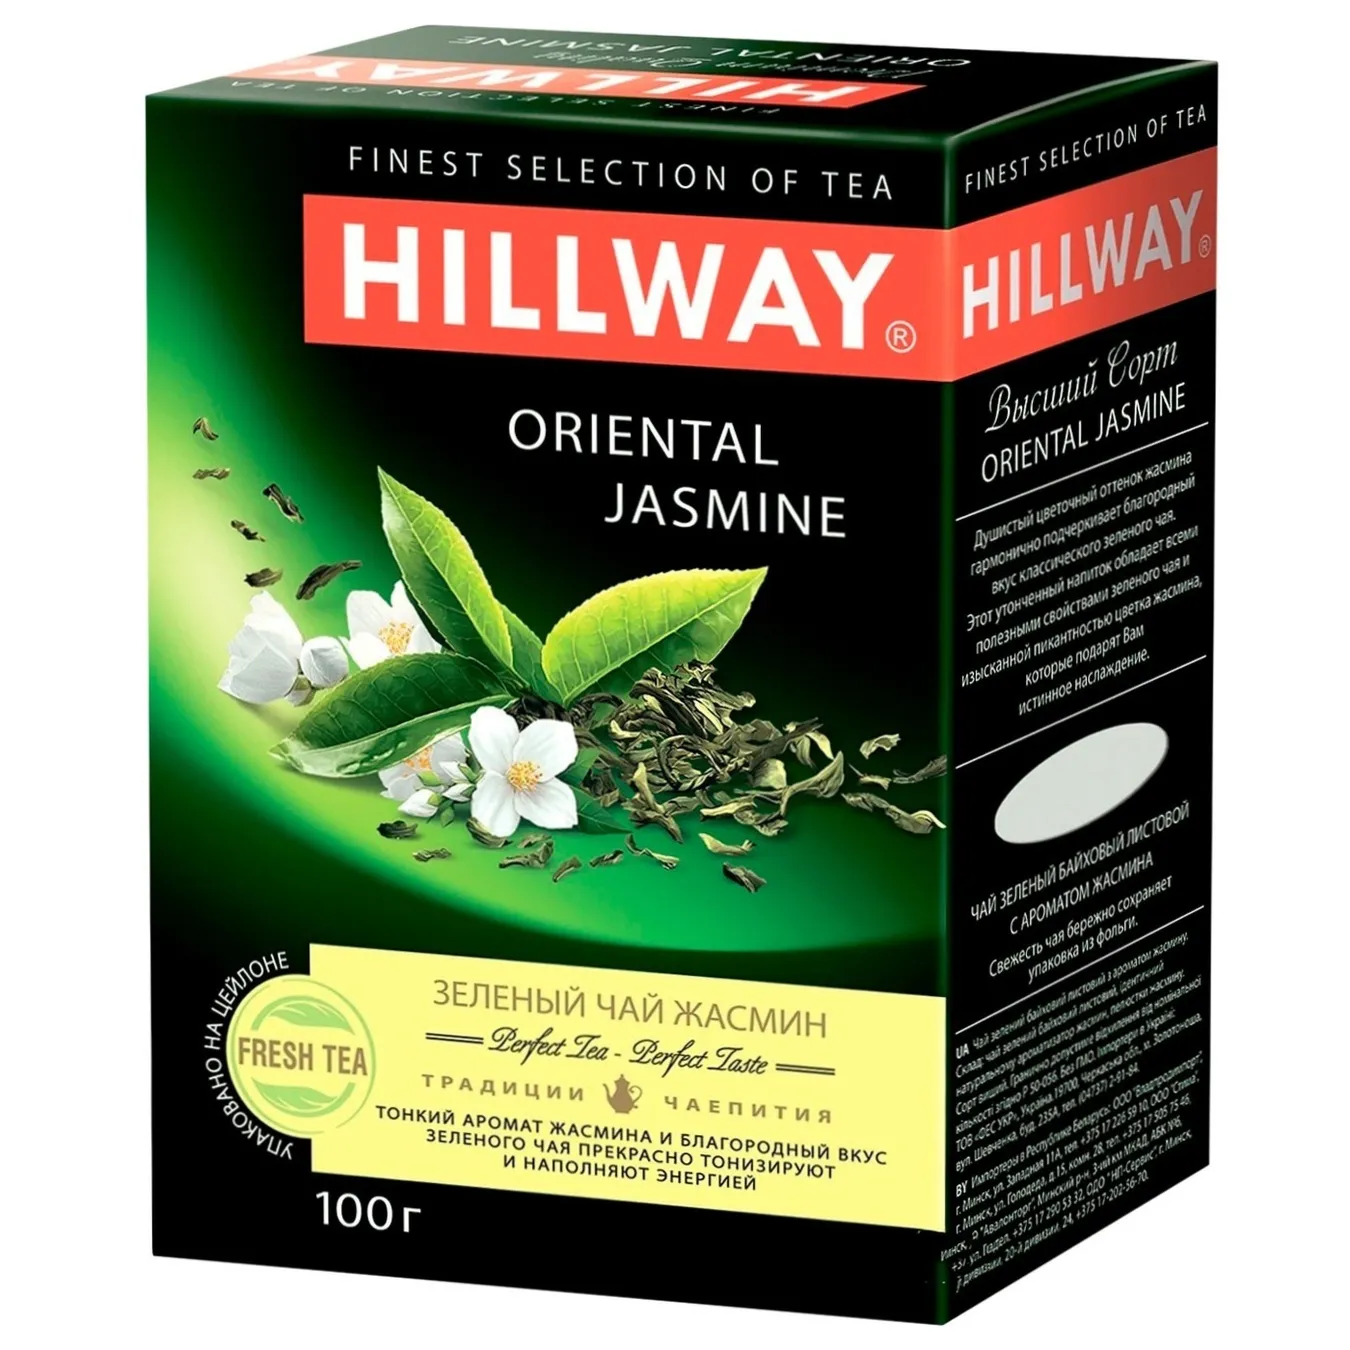 Hillway Oriental Jasmine Green Tea 100g